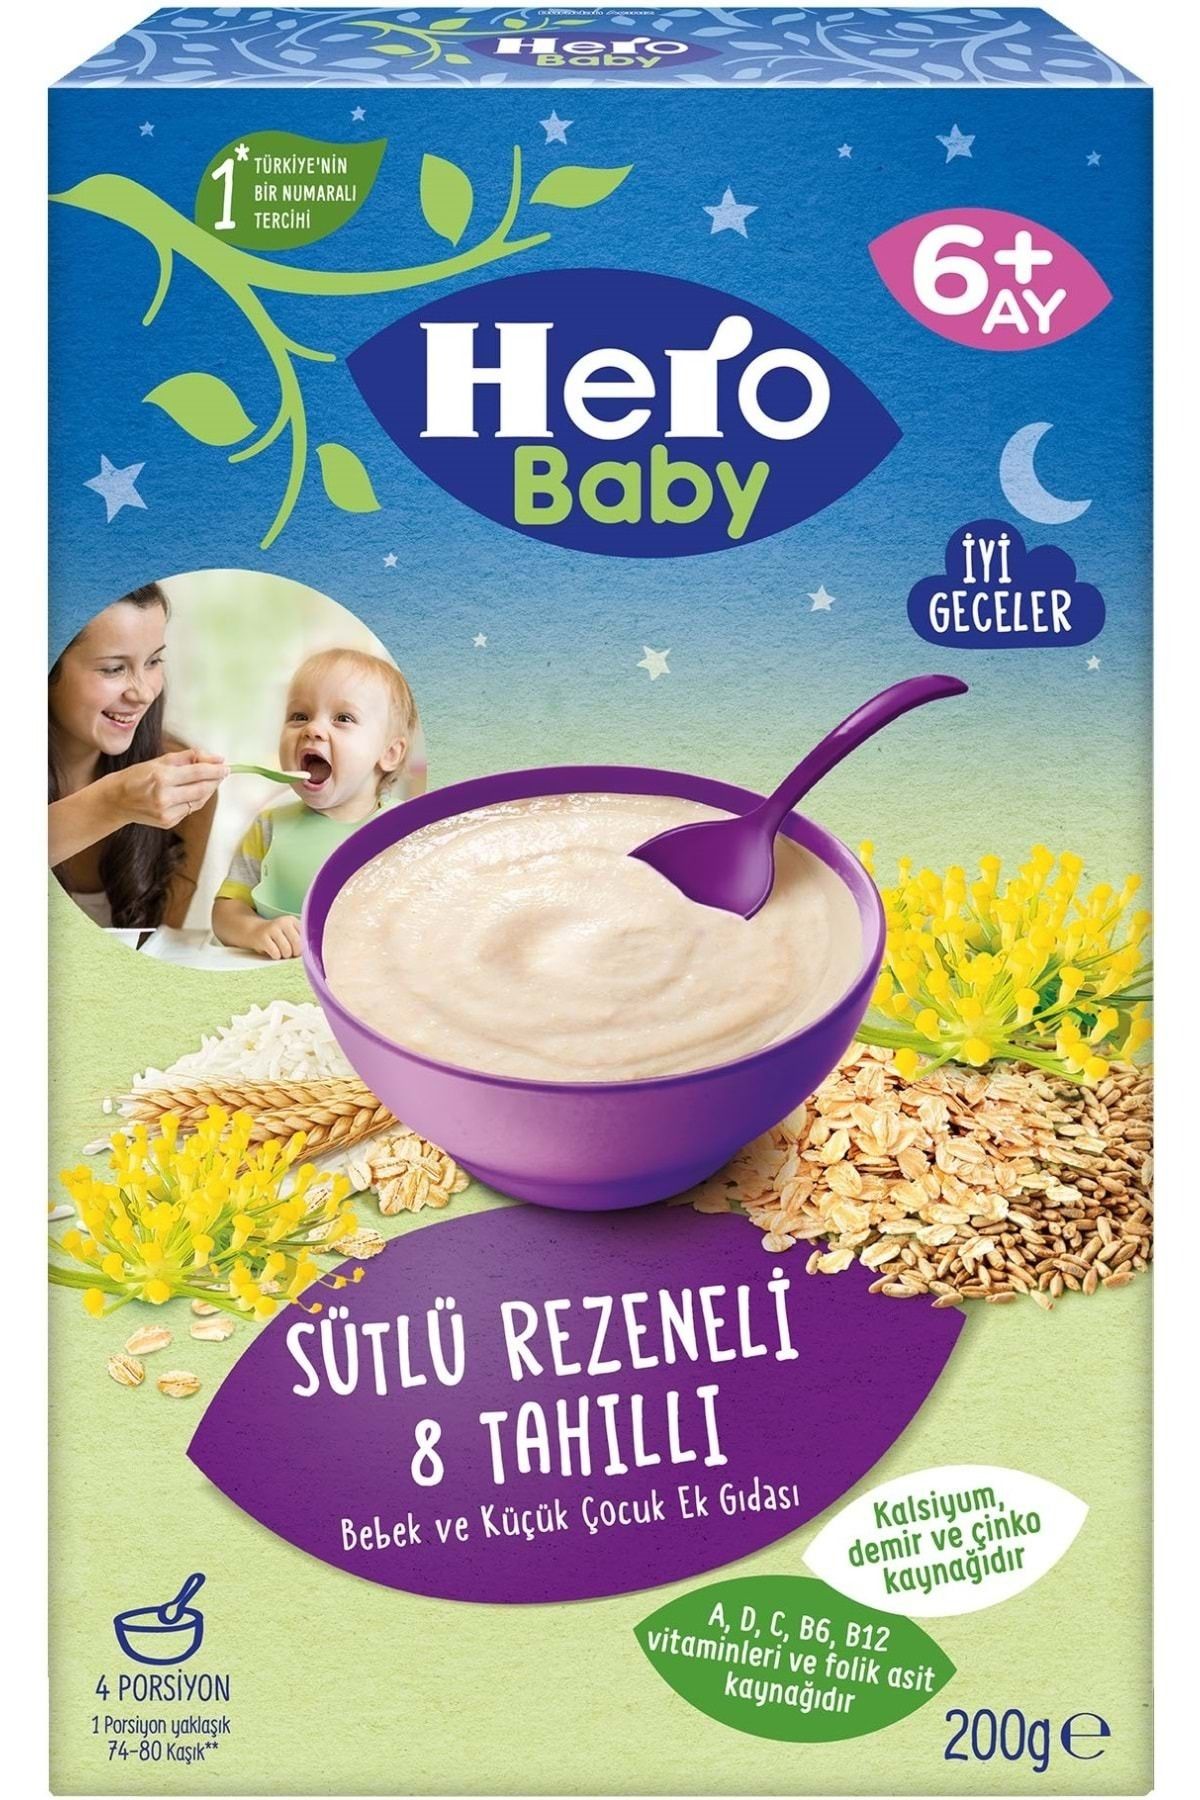 Hero Baby Sütlü 8 Tahıllı Rezeneli 200 gr